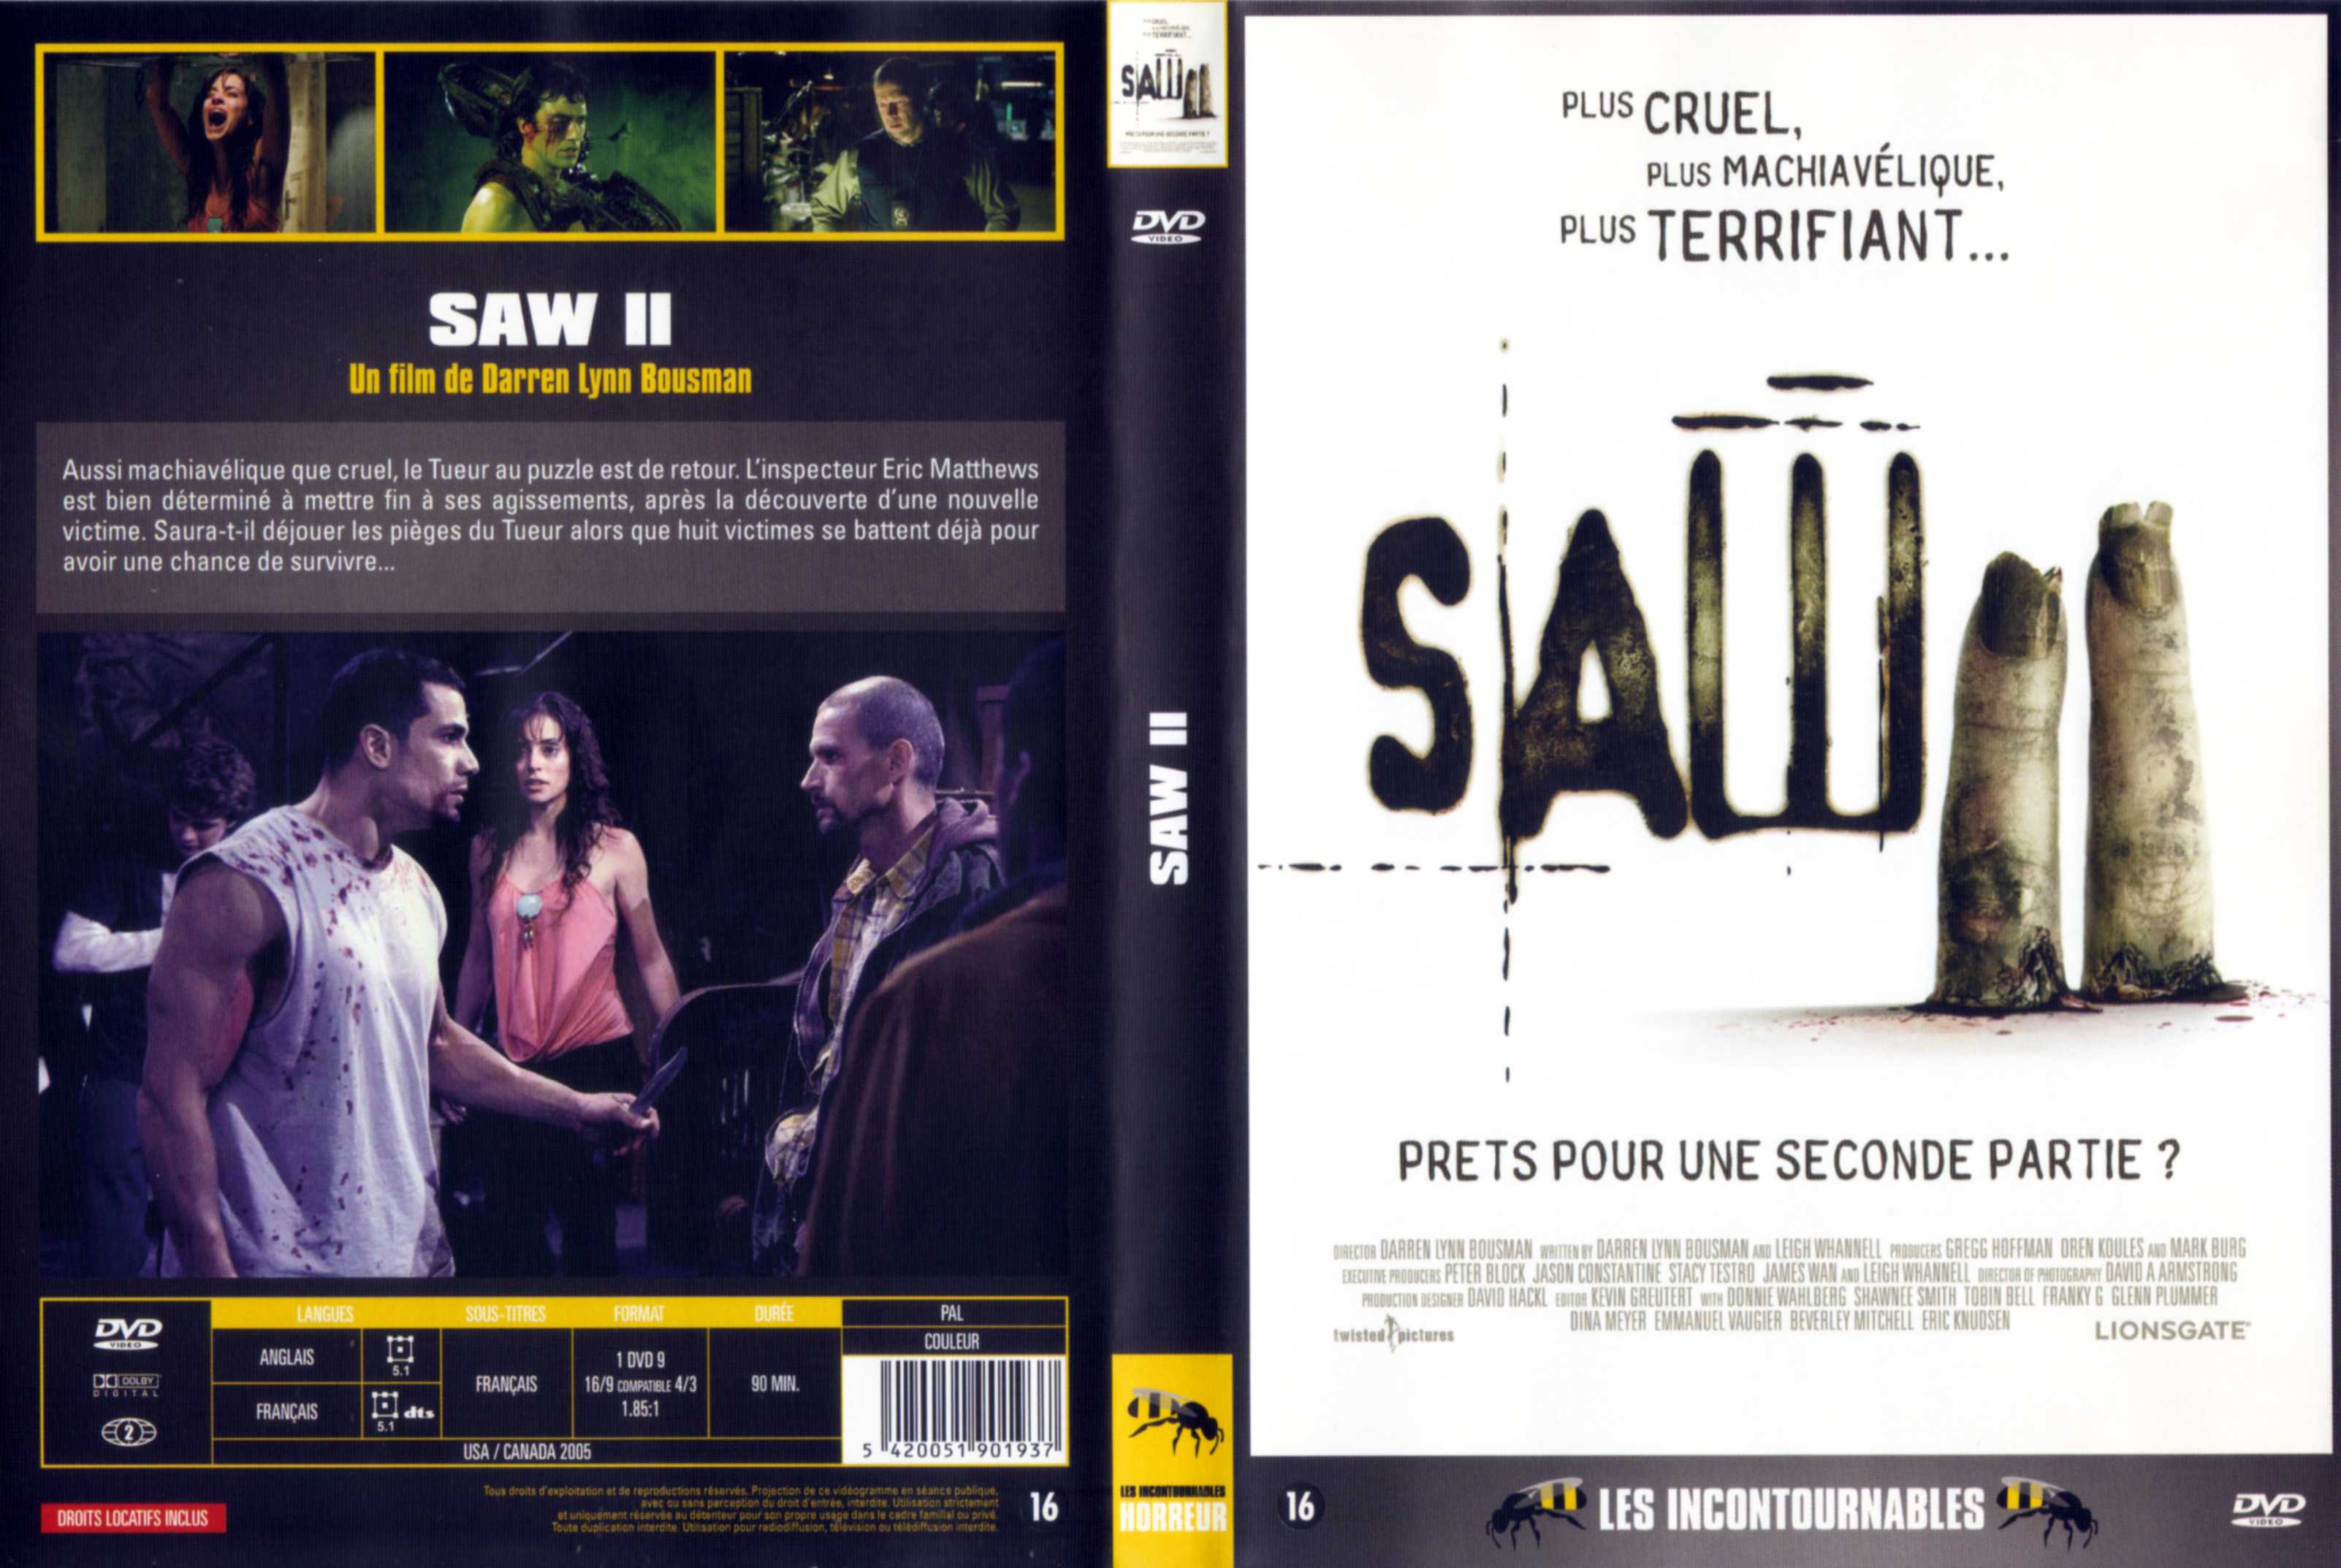 Jaquette DVD Saw 2 v5